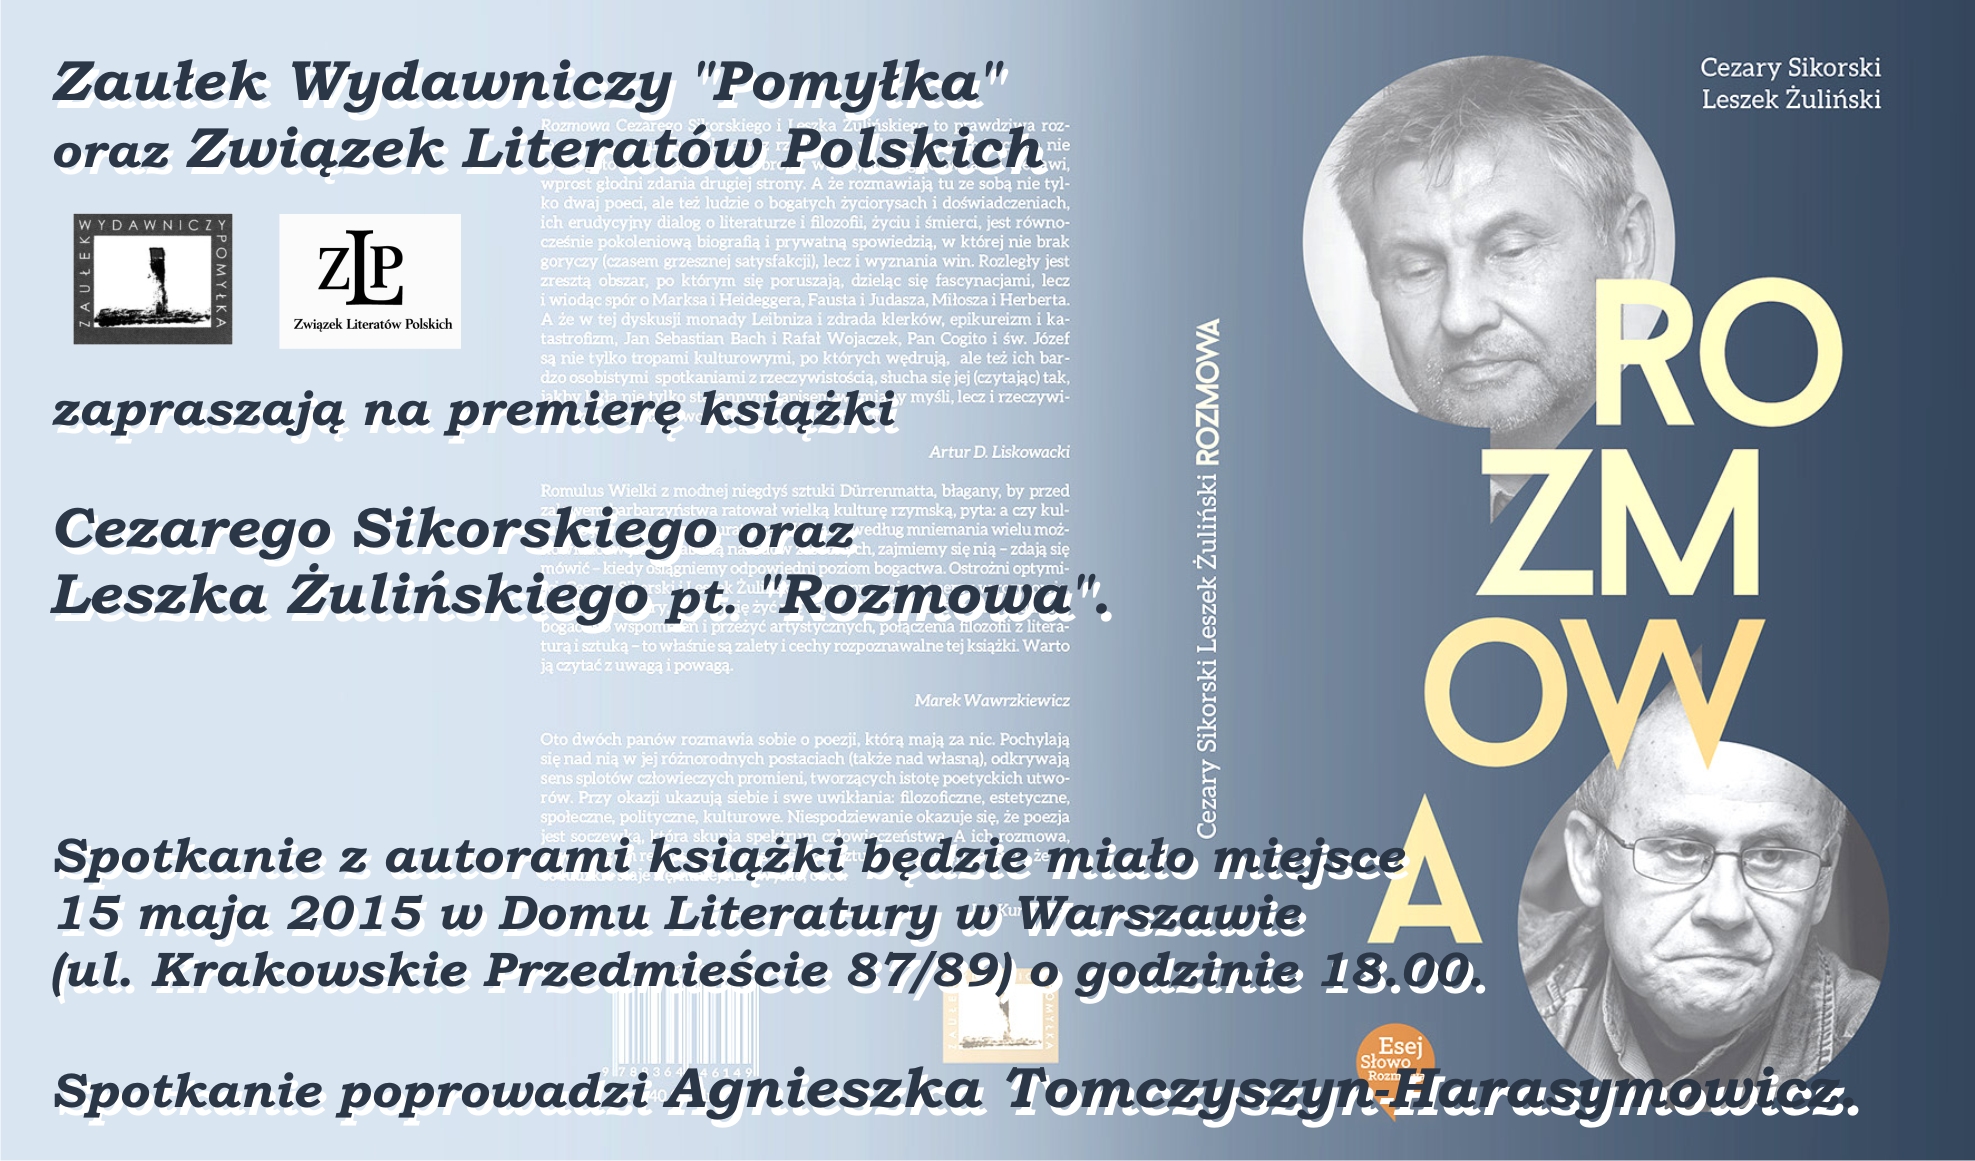 zaproszenie na promocję książki "Rozmowa" Cezarego Sikorskiego i Leszka Żulińskiego